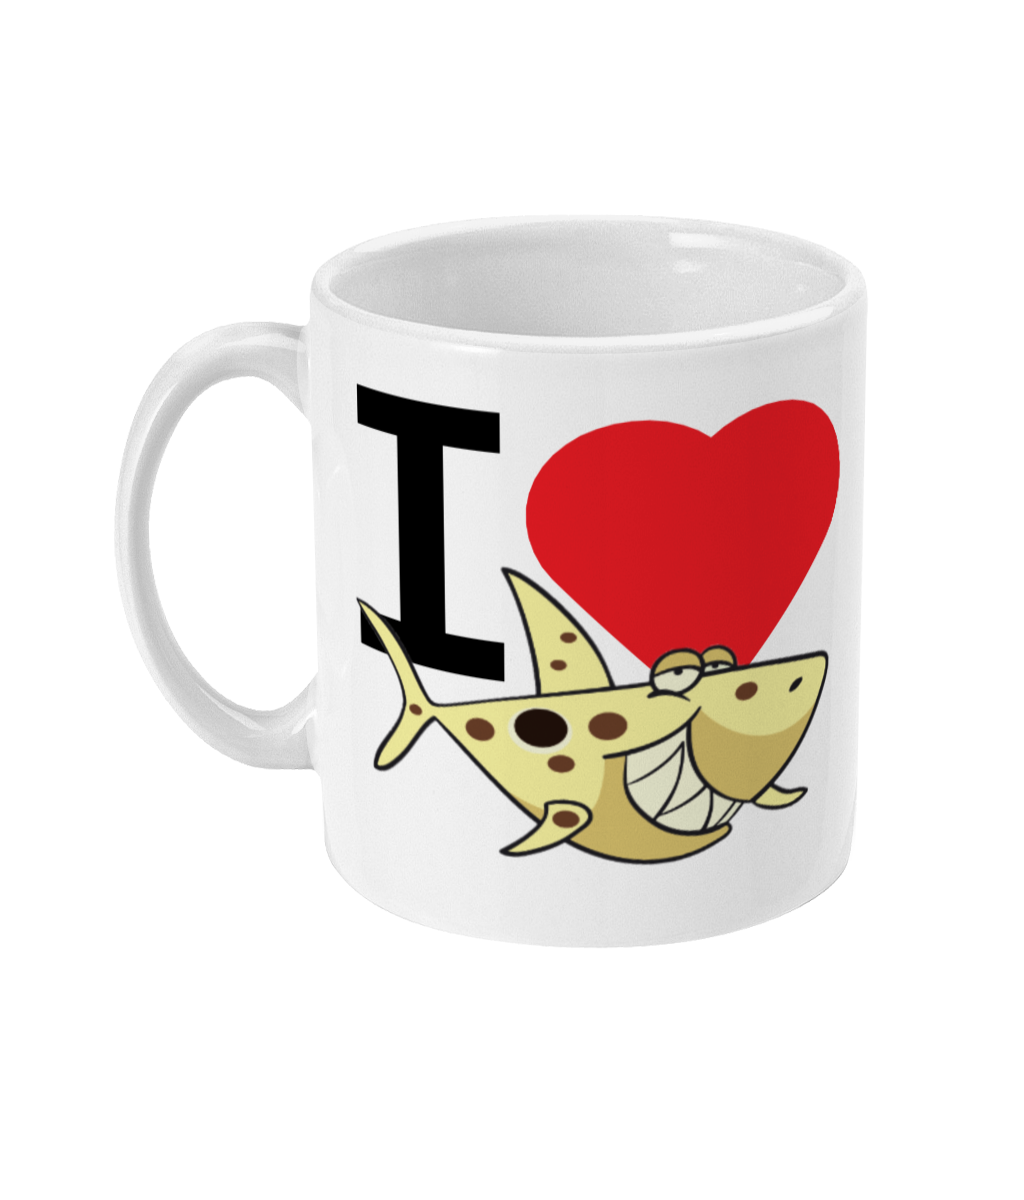 I Heart Sharks 11oz Mug